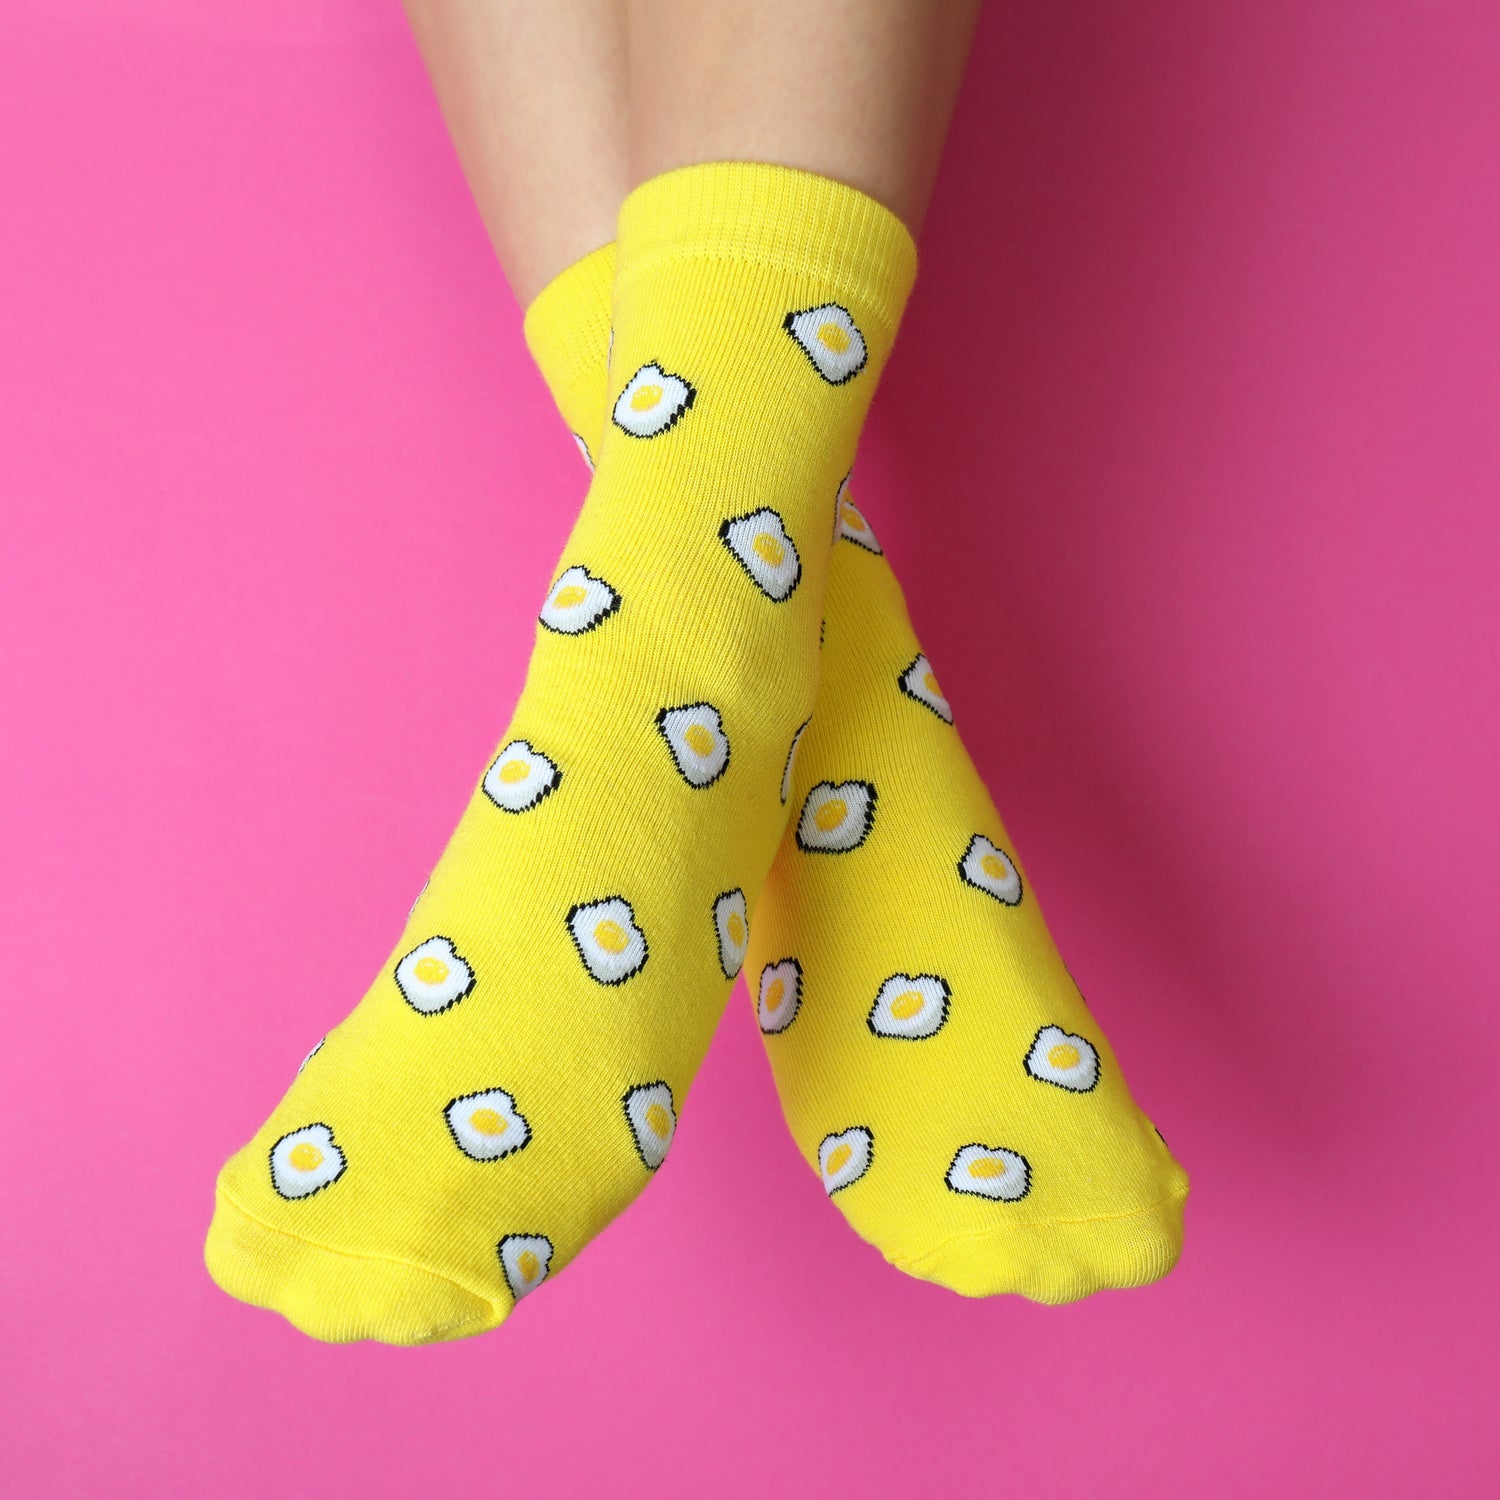 7373 Mix Design socks for Women 